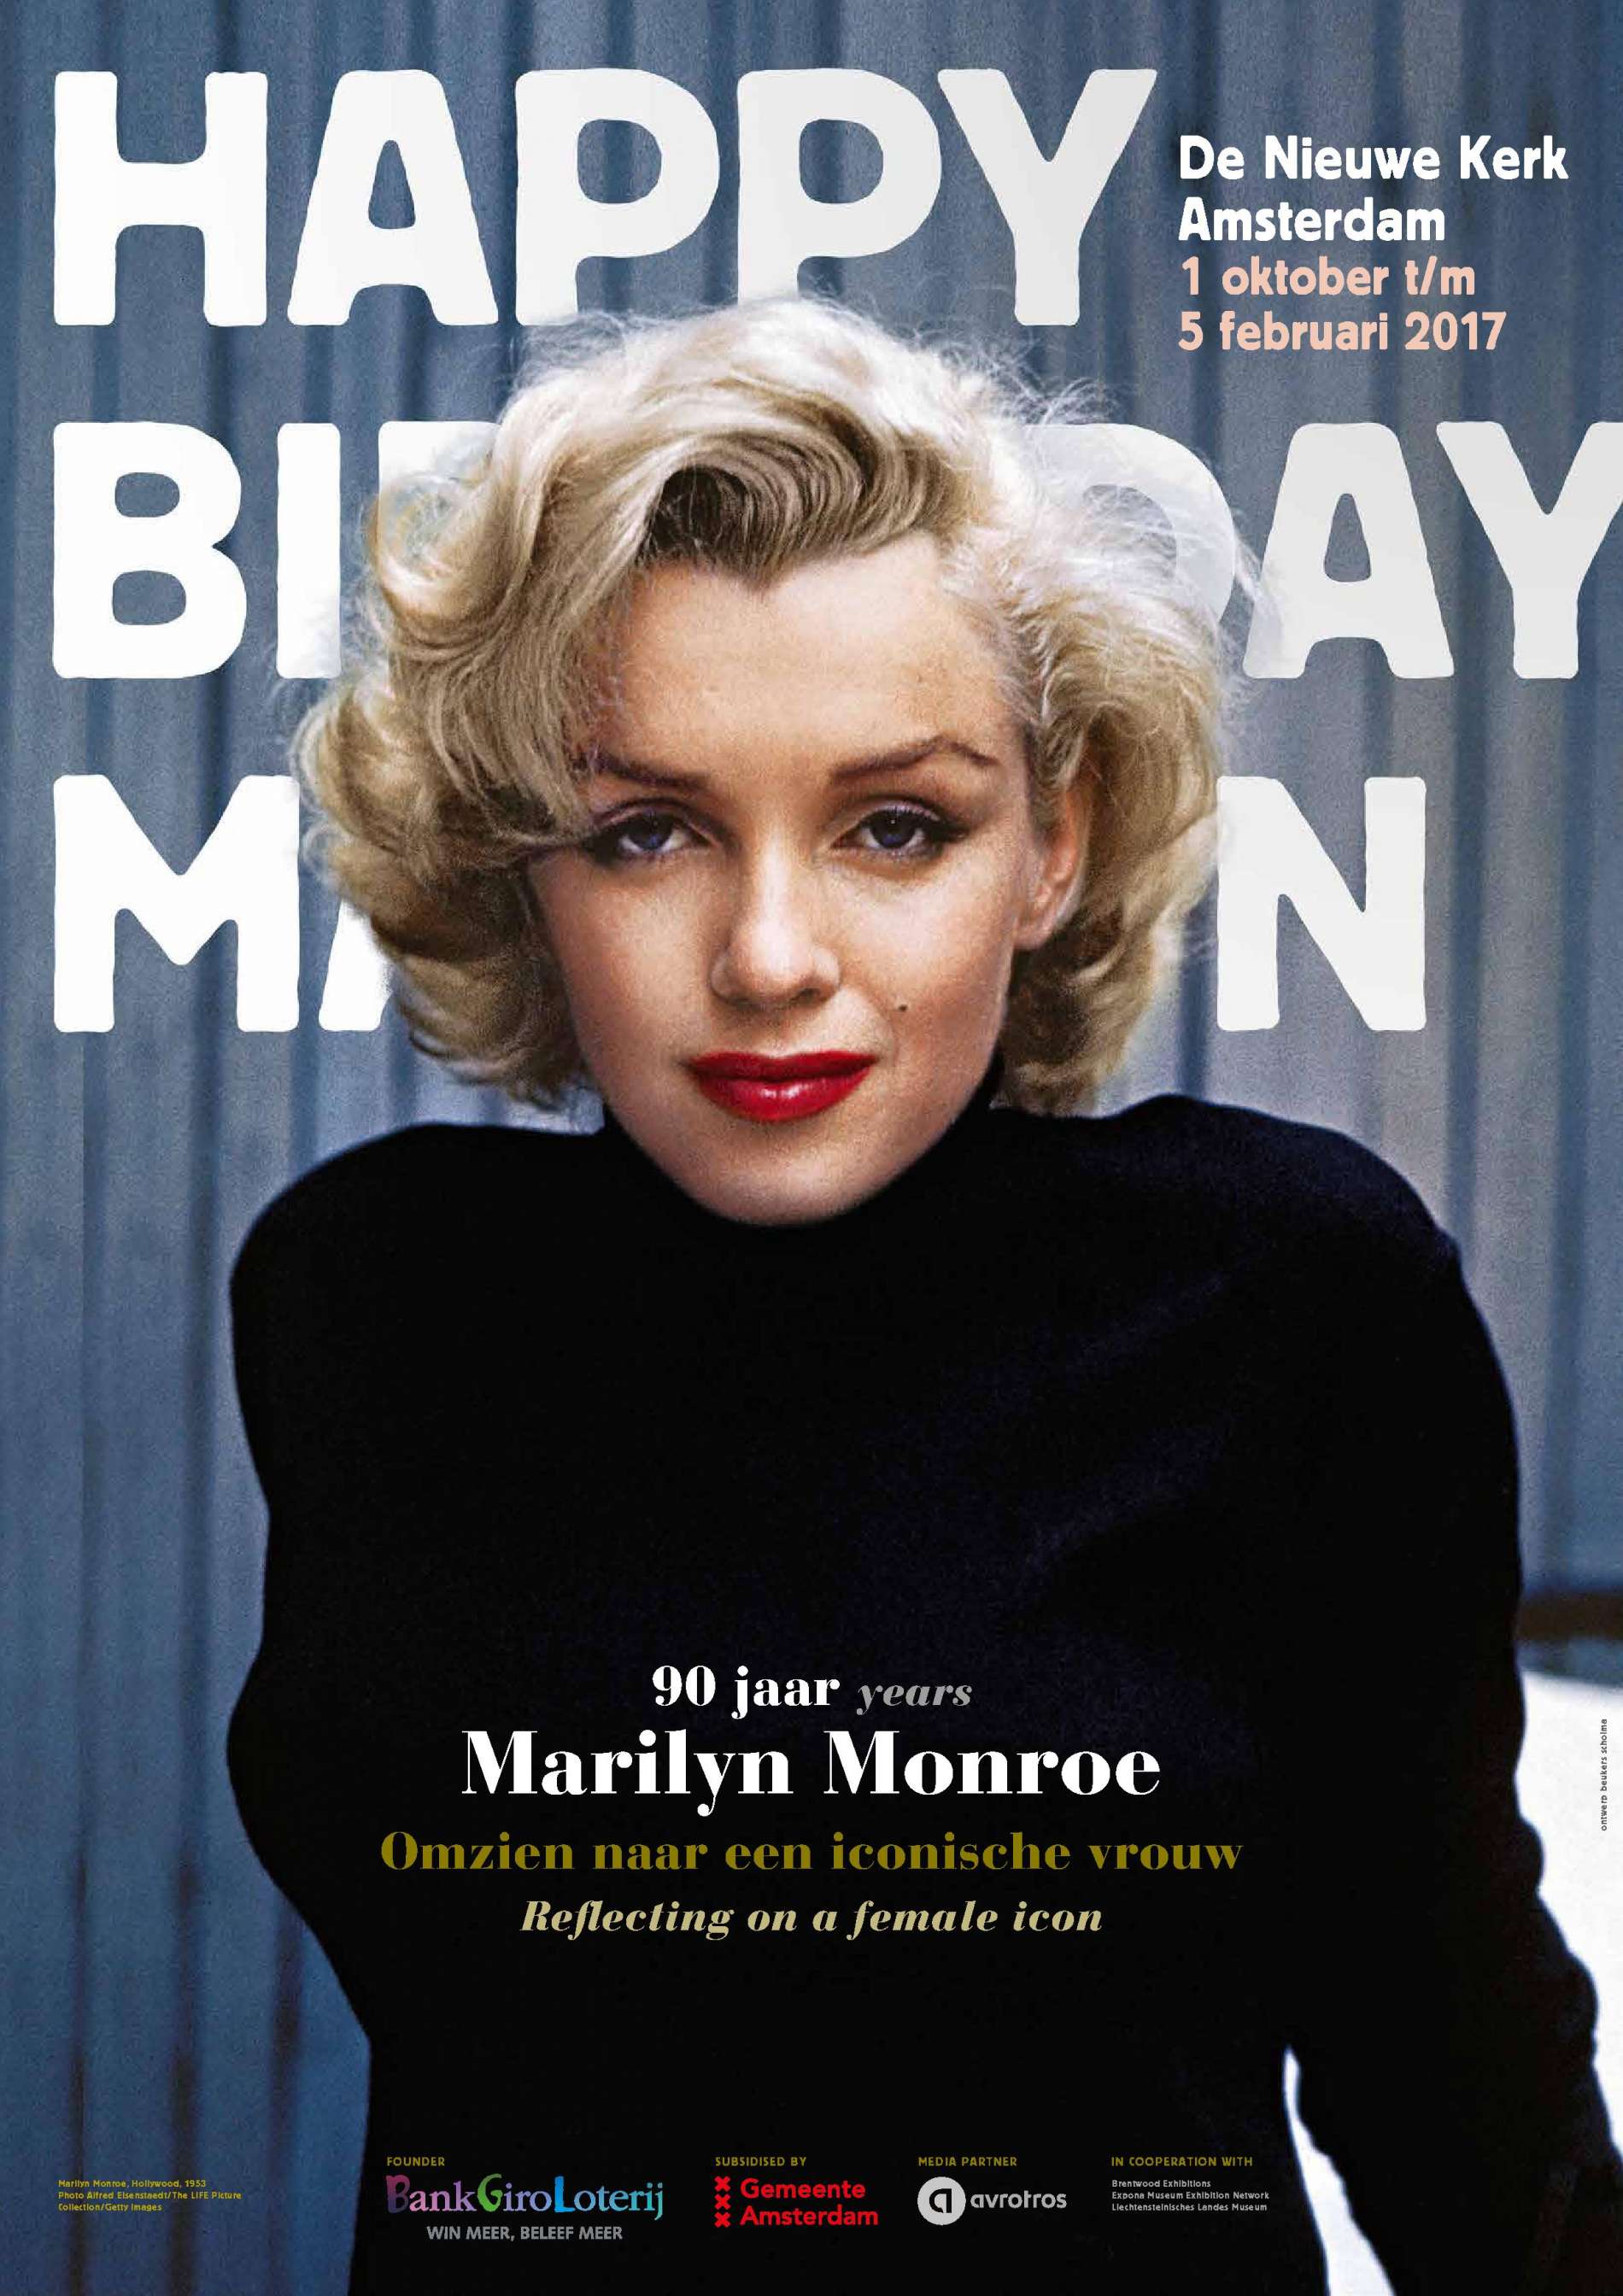 koelkast Een deel officieel Marilyn Monroe komt naar De Nieuwe Kerk - De Nieuwe Kerk Amsterdam